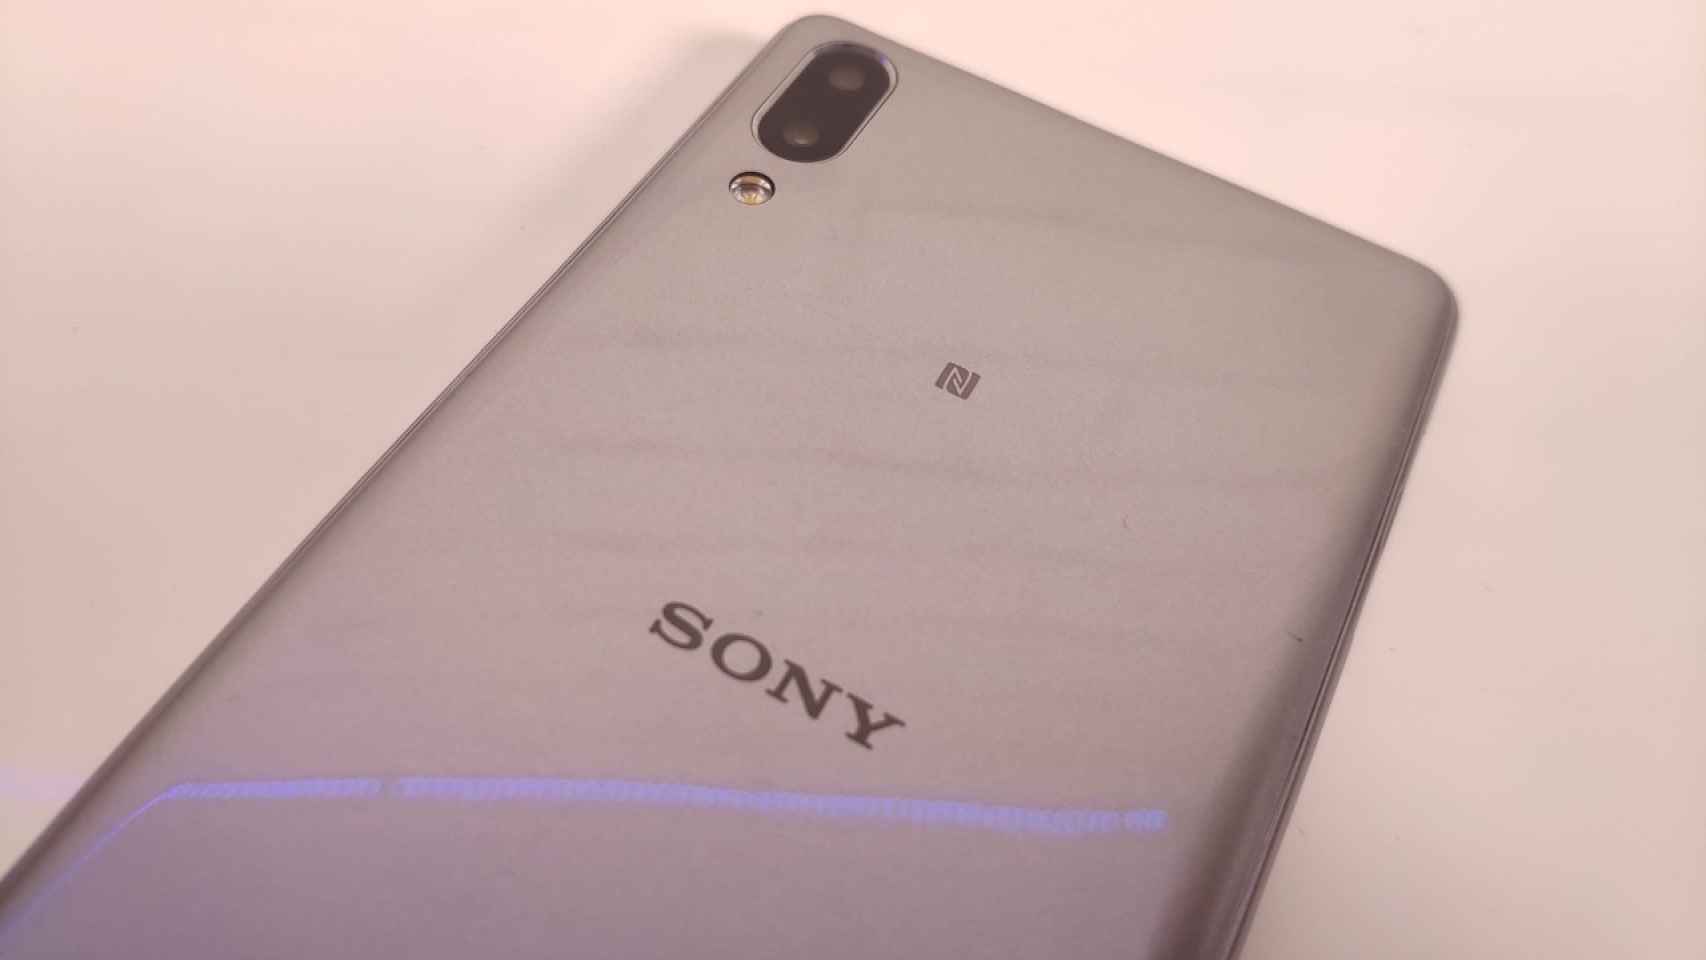 Sony Xperia L3: La nueva apuesta de Sony para la gama de entrada